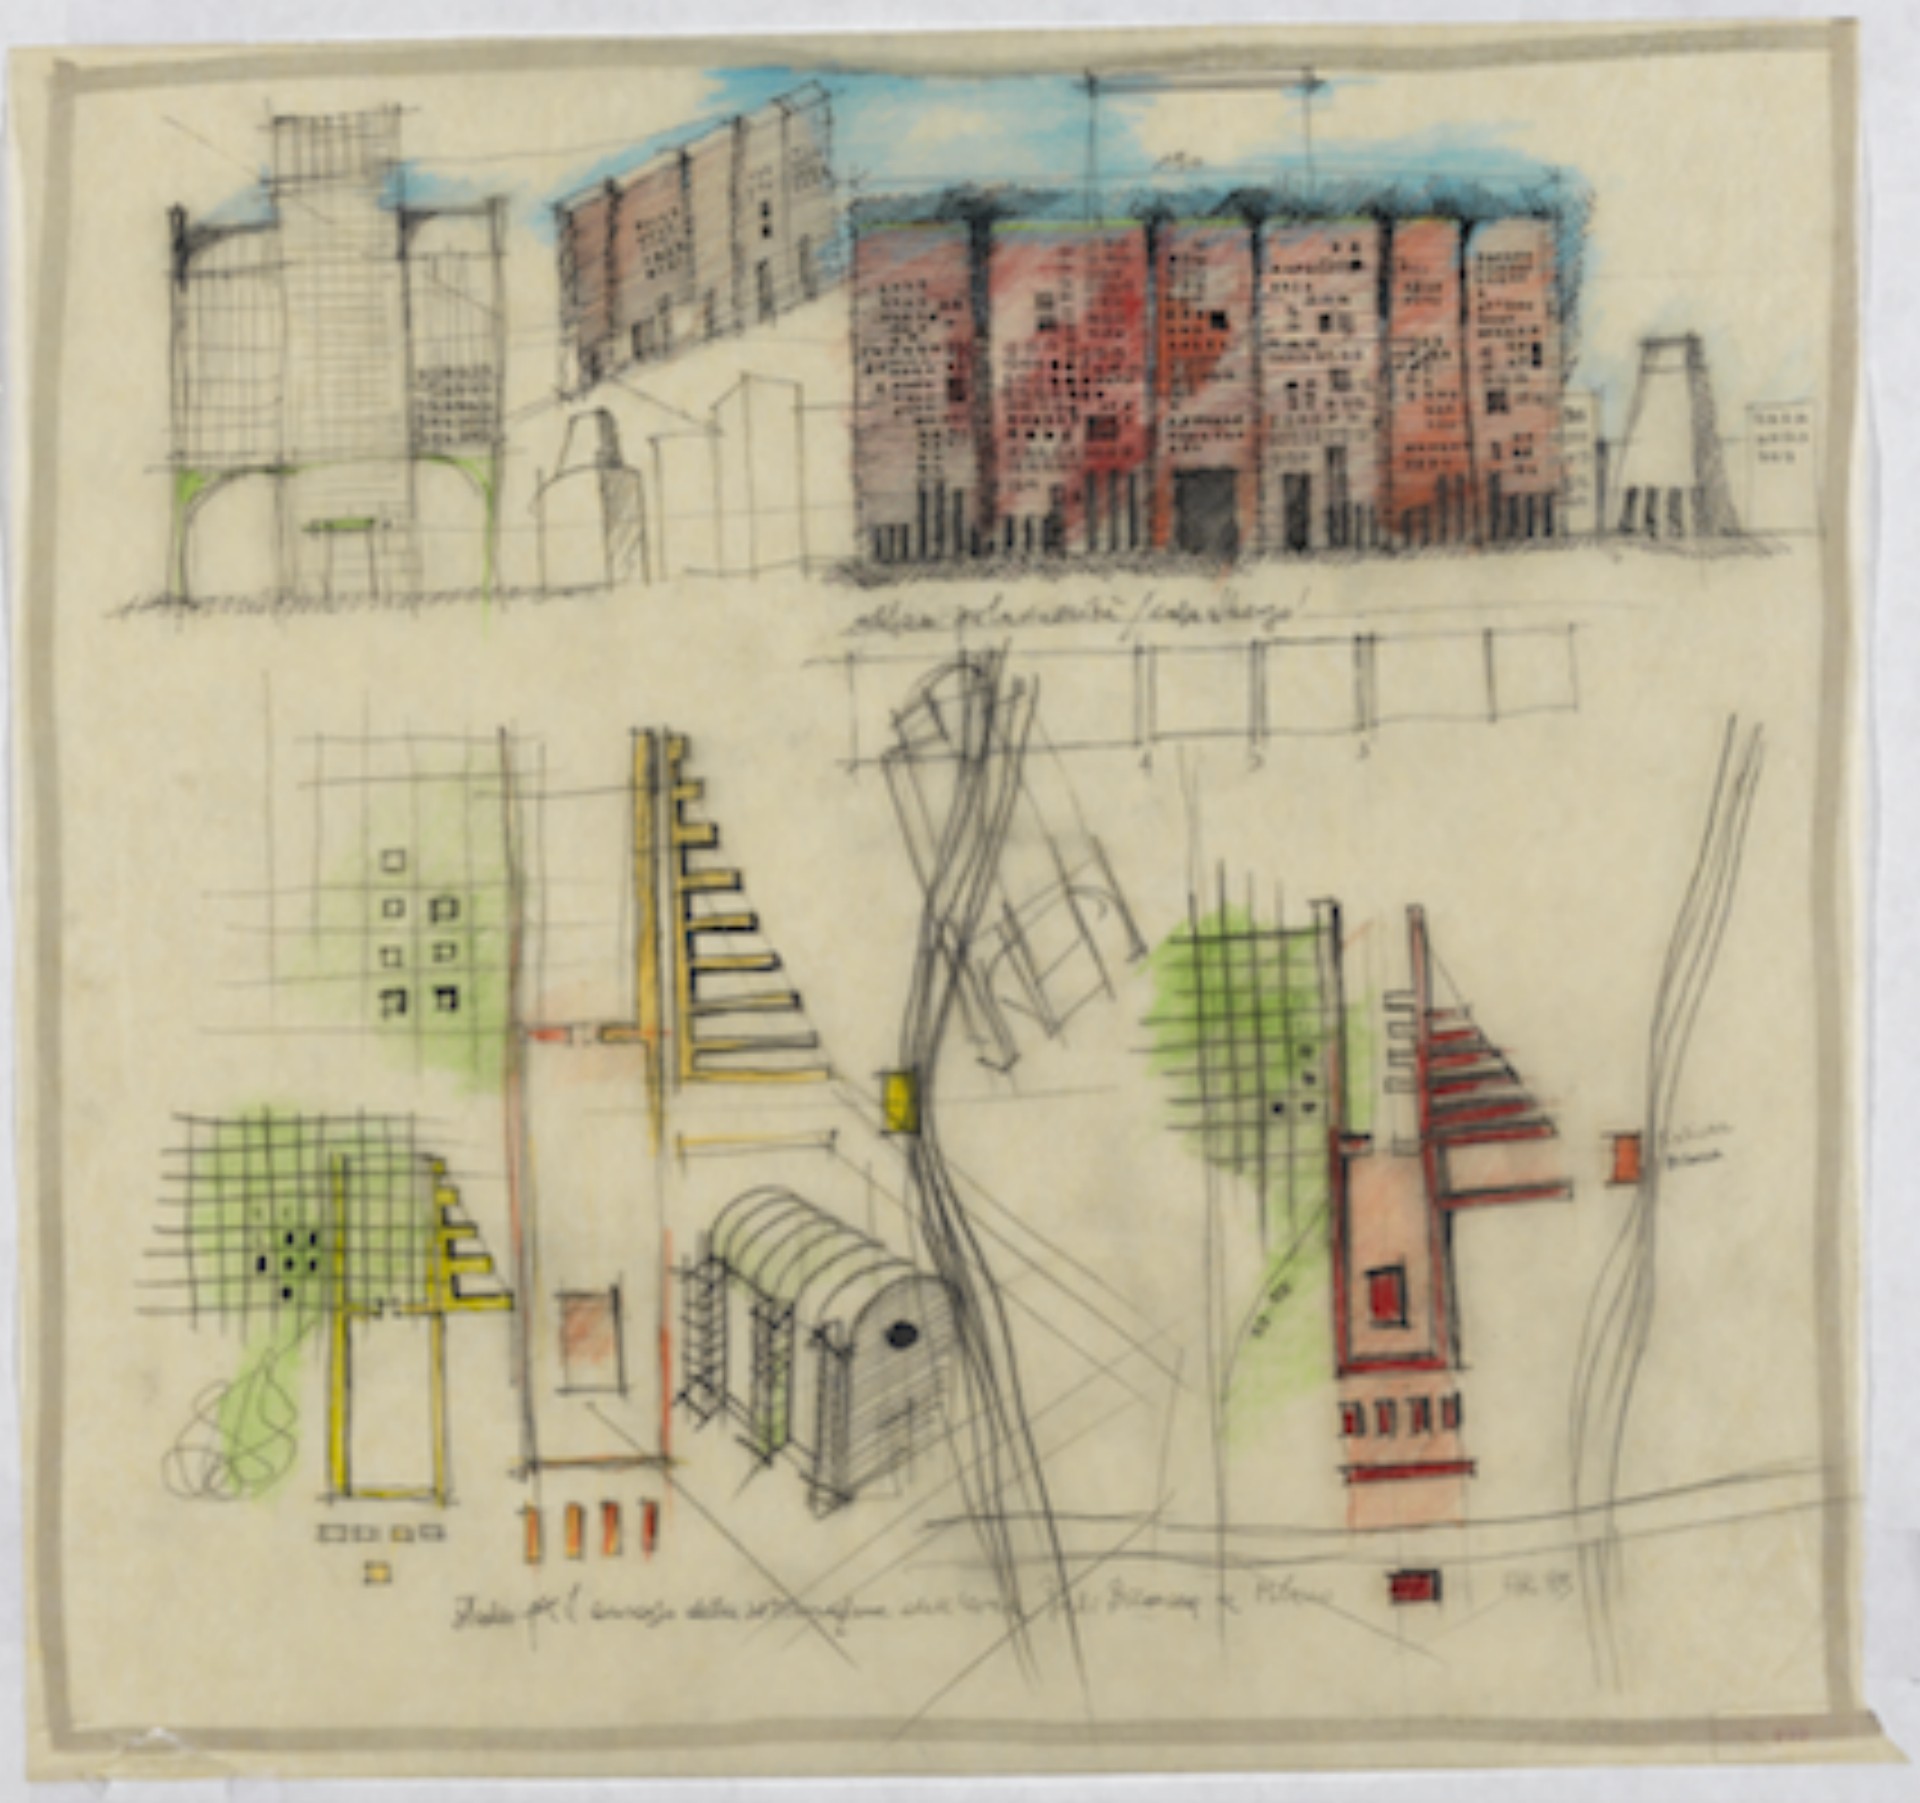 Aldo Rossi and Milan 19551995 exhibition | Floornature